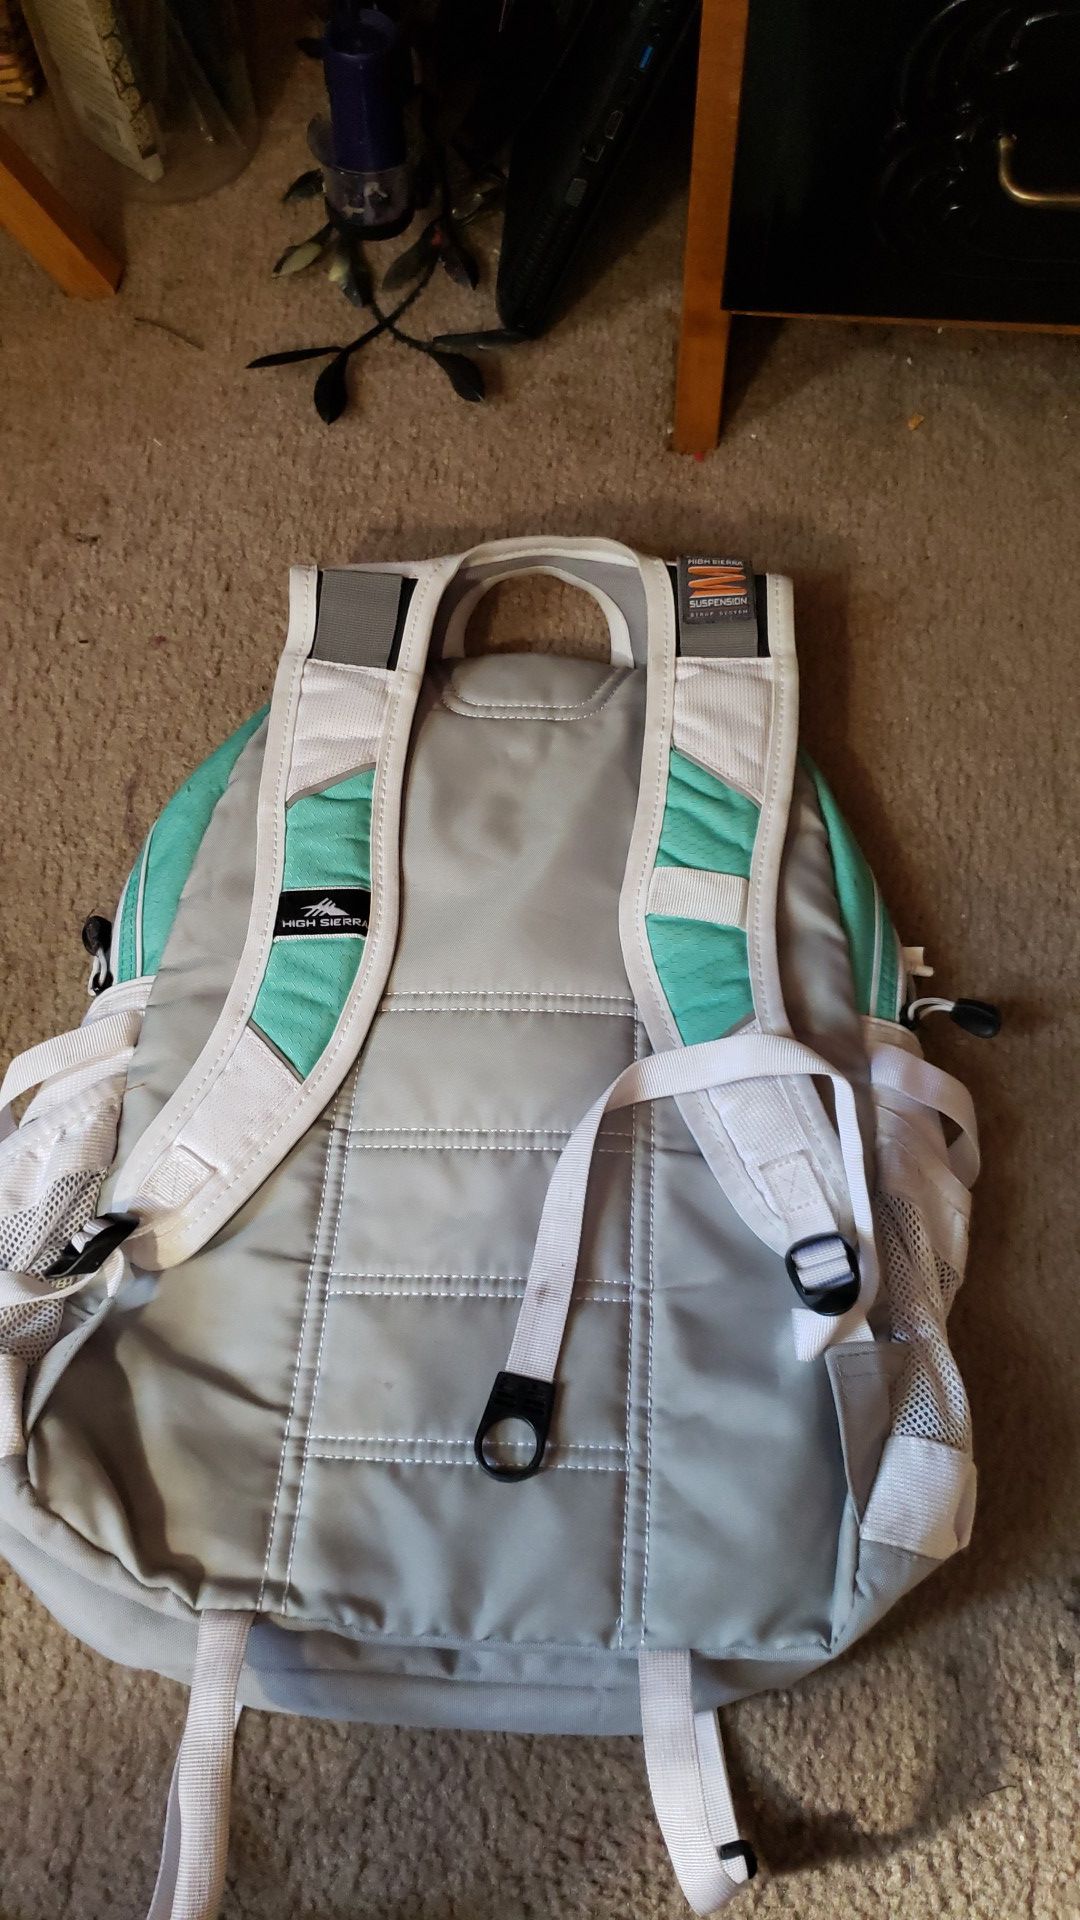 High Sierra backpack